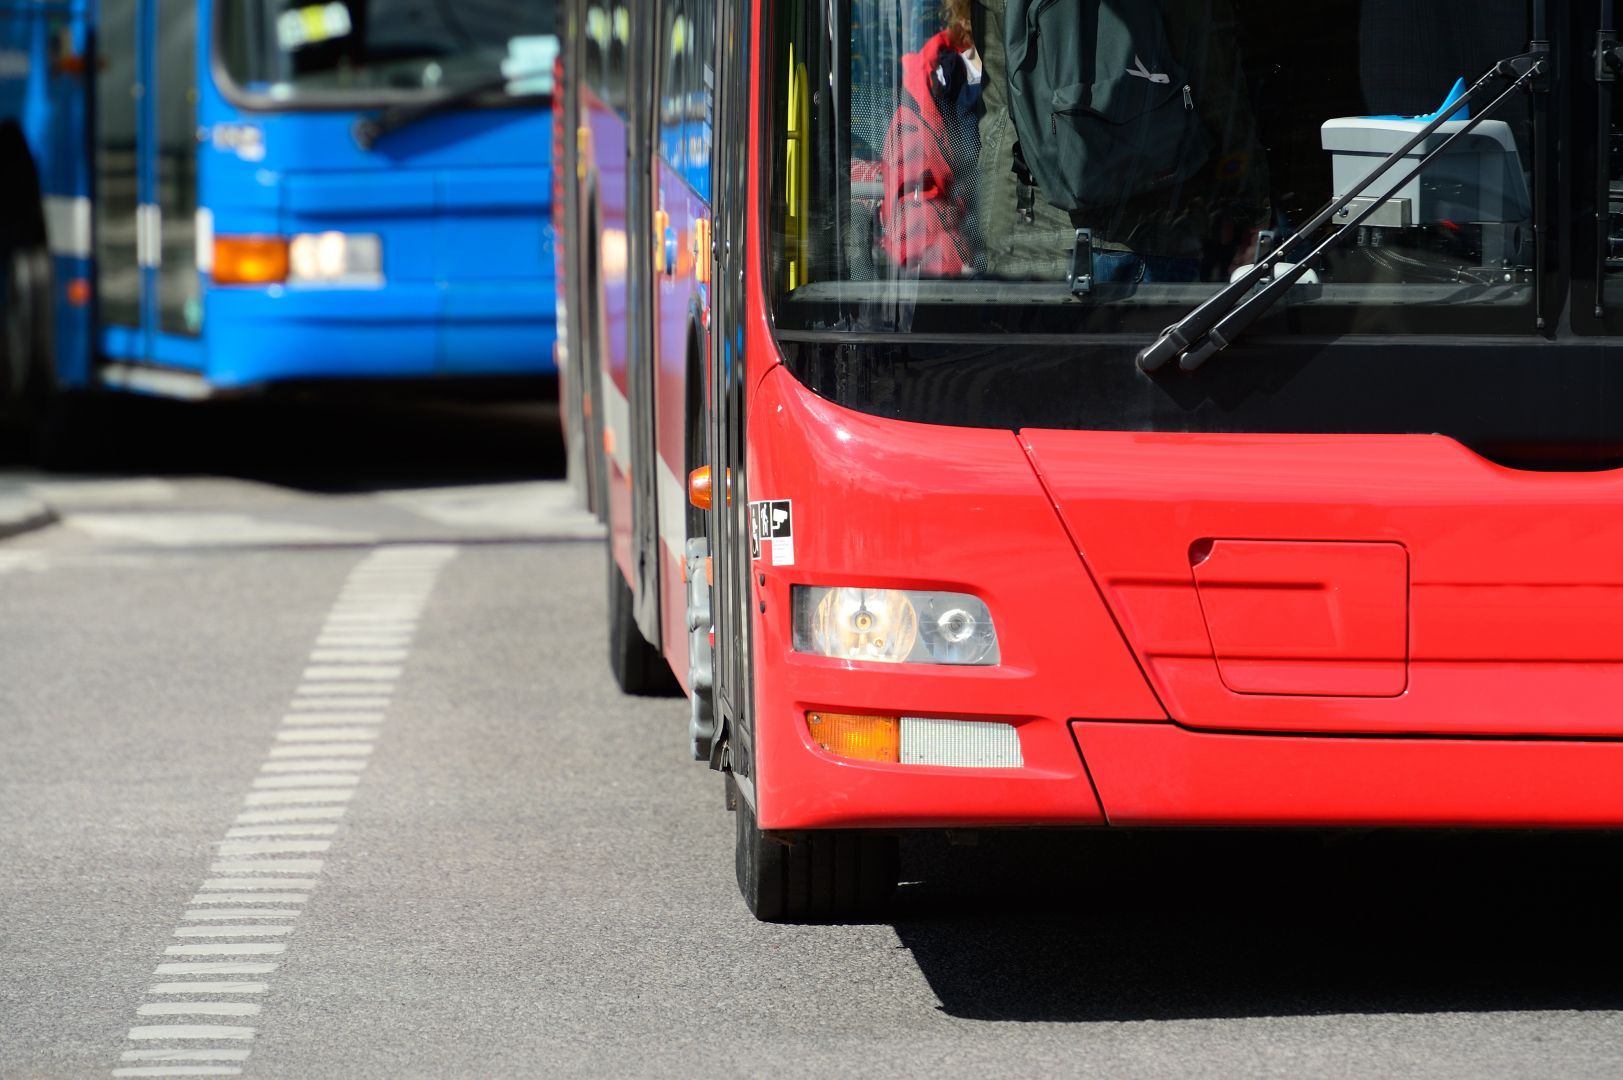 Poptávka na přepravu autobusem (Autobusová) - Chomutov